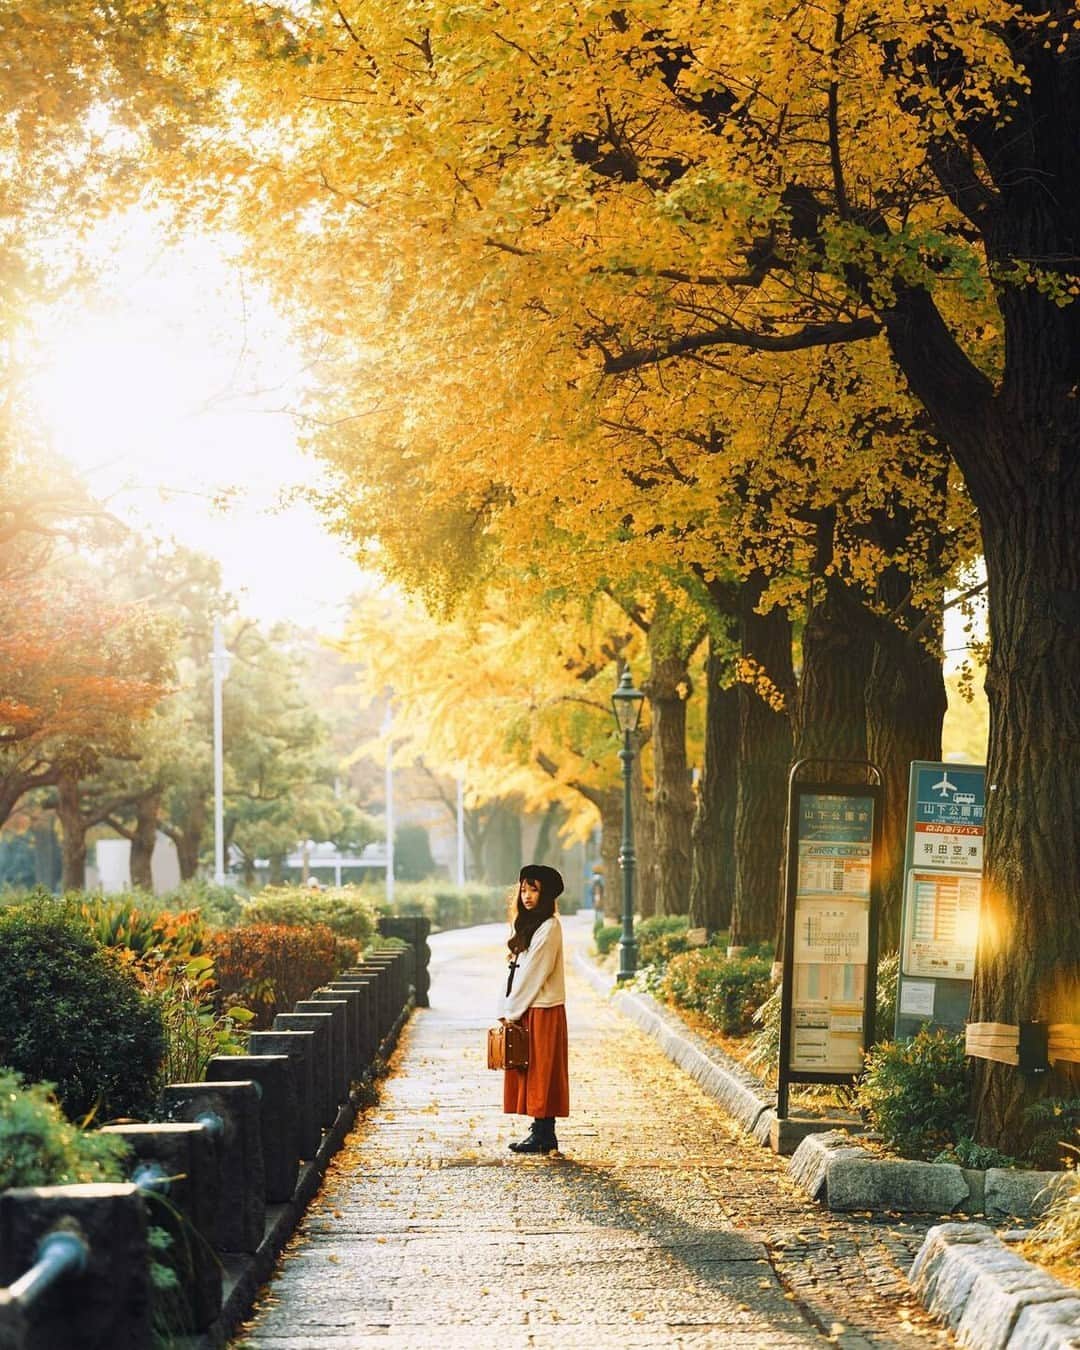 東京カメラ部 横浜分室のインスタグラム：「Photo by @yuco_colon 「山下公園通り」 https://www.instagram.com/p/Cz-zwA7vSnj/ . いいね！＆コメント大歓迎！ ※投稿に関するご注意・ポリシーは東京カメラ部に準じます。詳しくは下記をご覧ください。 https://fb.minpos.com/fb/willvii/camera_jpn/static/guideline . #みなとみらい線フォト散歩 #みなとみらい線フォトさんぽ #みなとみらい線 #横浜 #新高島 #みなとみらい #馬車道 #日本大通り #元町中華街 #yokohama #東京カメラ部 #Japan #photo #写真 #日本 Follow: @TCC.Yokohama . ※各種法令、マナー、関係者の指示に従った撮影をお願いします。 *Please ensure that your photography adheres to all relevant laws, etiquette, and instructions issued by authorized persons.」